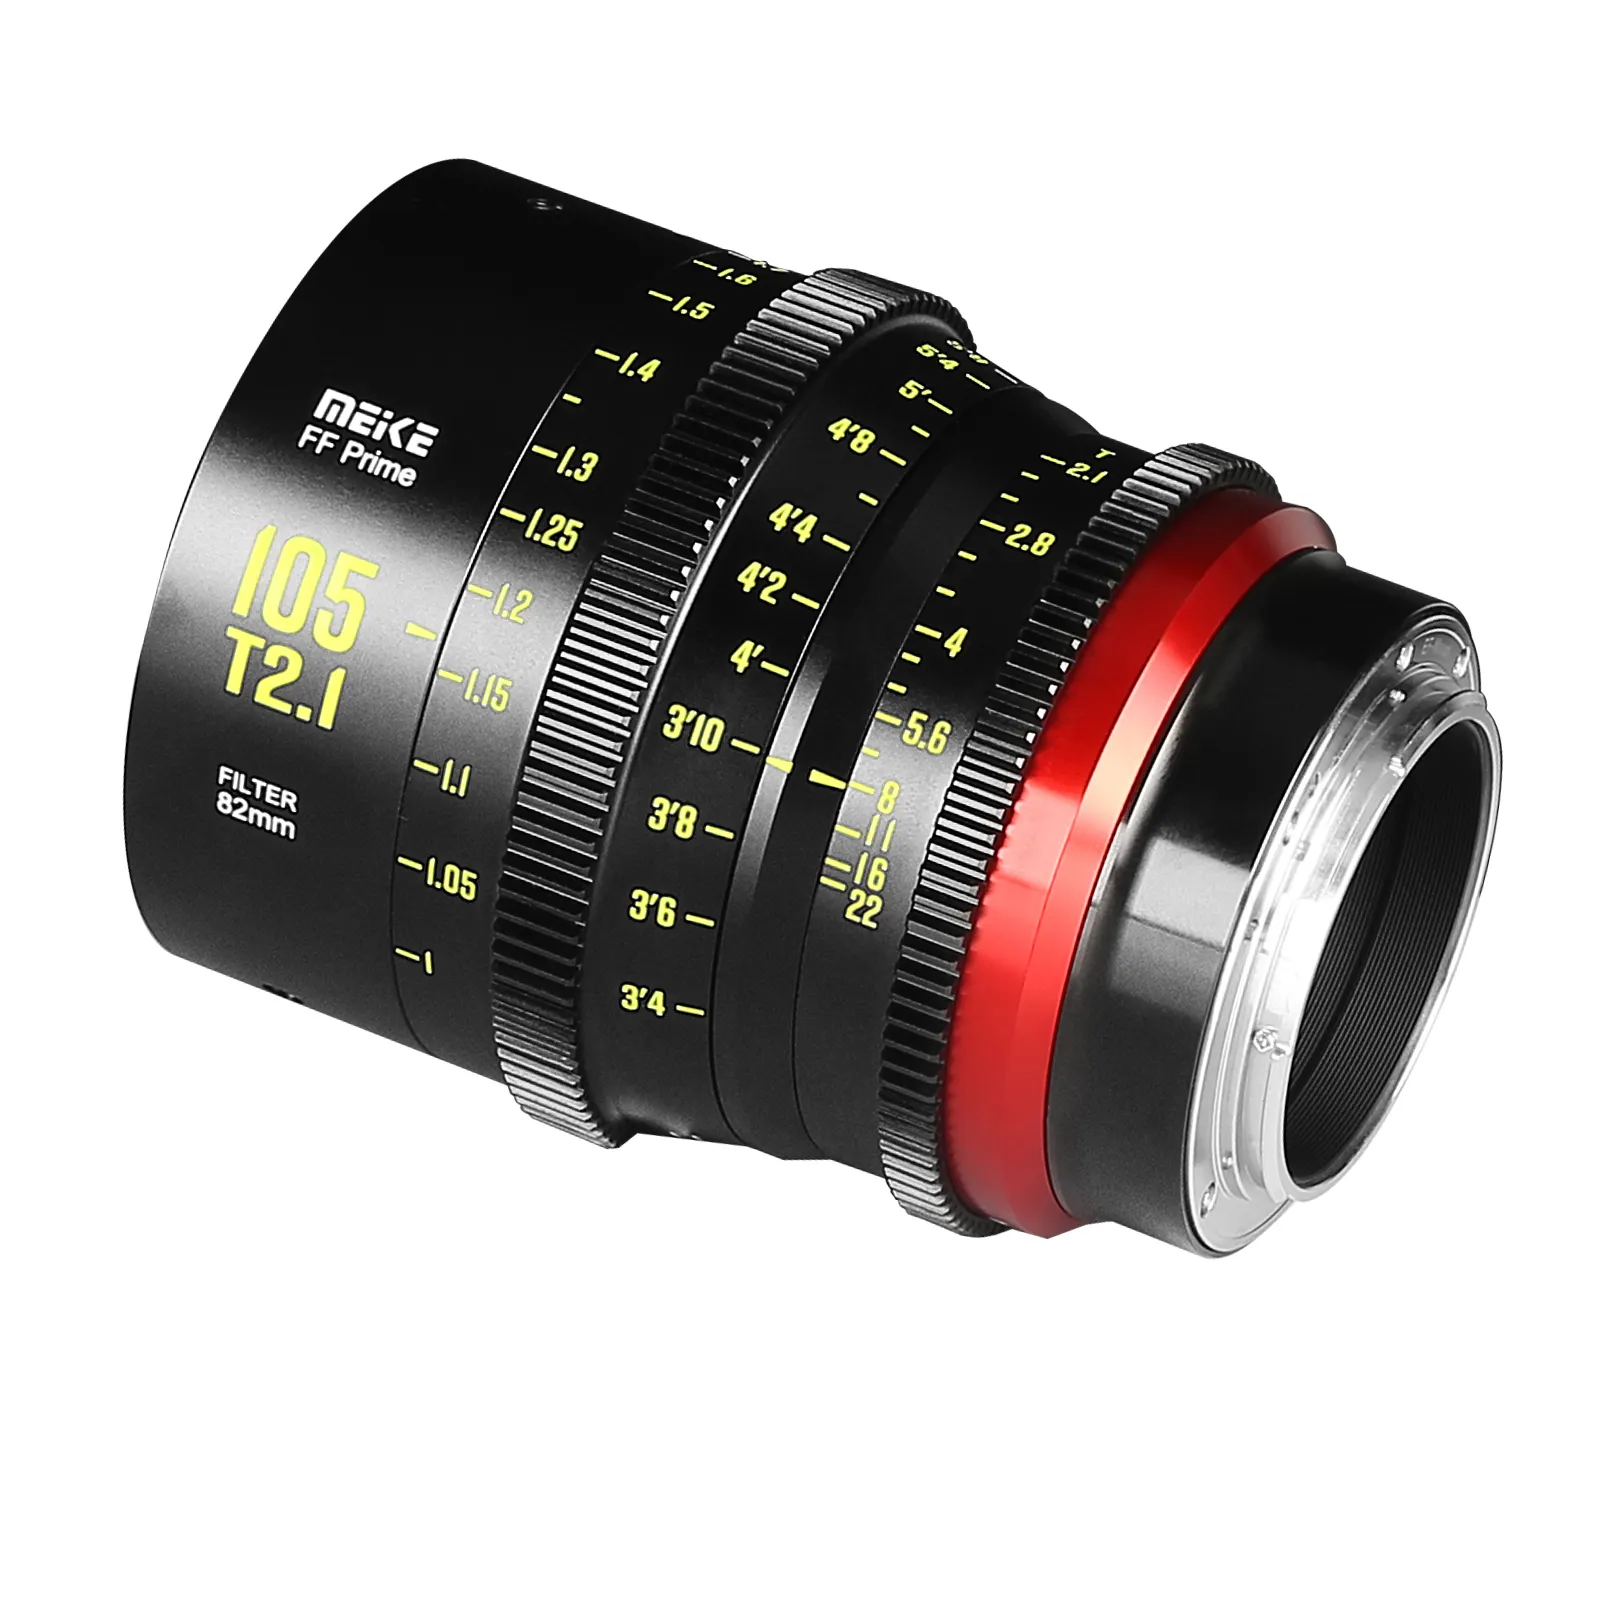 Новый Meike Prime 105 мм T2.1 Cine Lens для полнокадровых кинокамер, EF mount PL mount